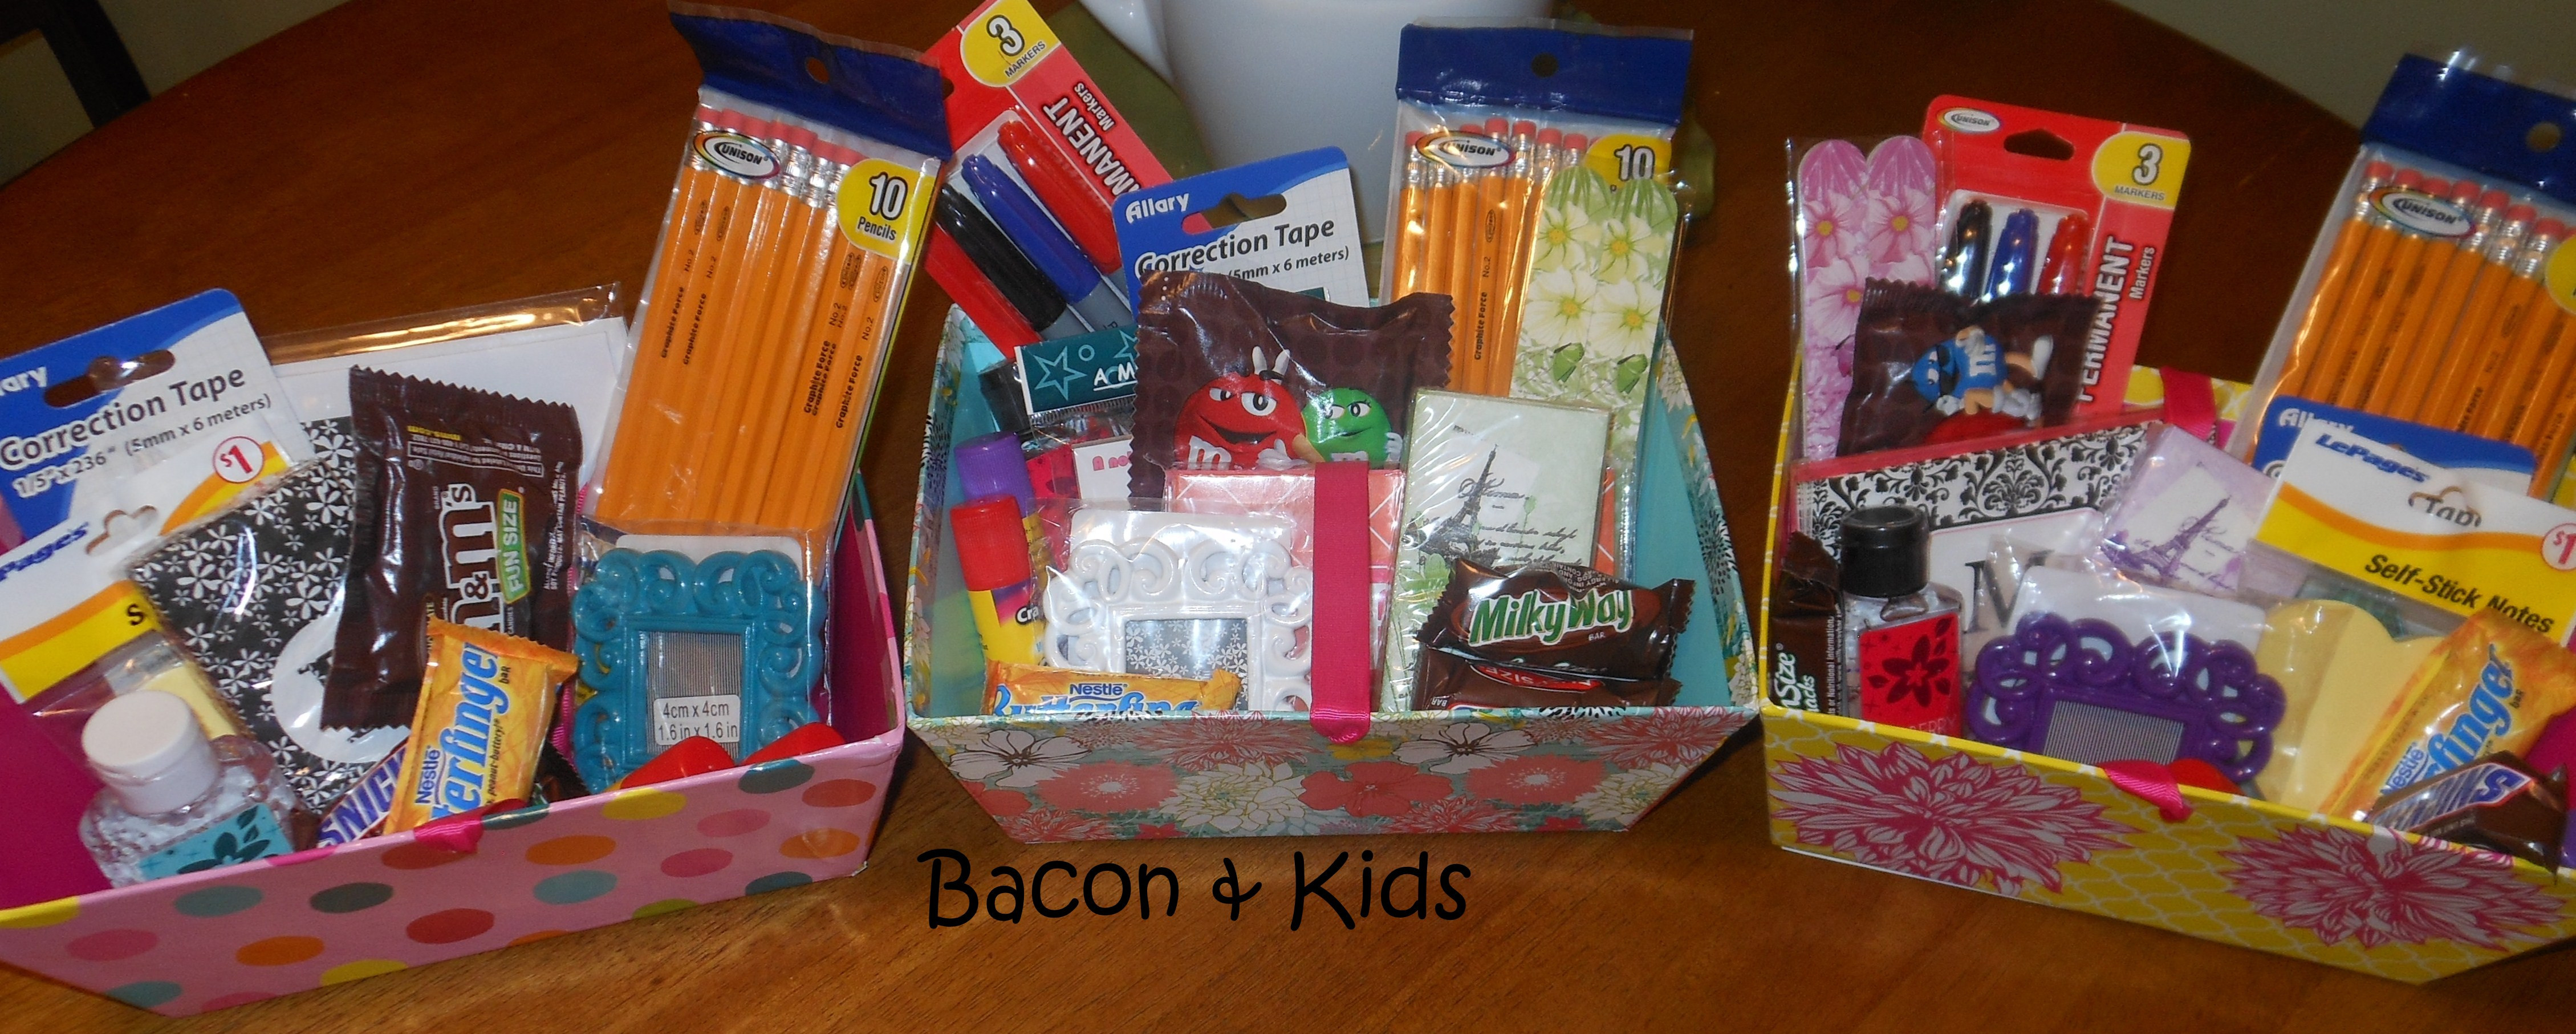 Best ideas about Teacher Gift Baskets Ideas
. Save or Pin teacher appreciation week Now.